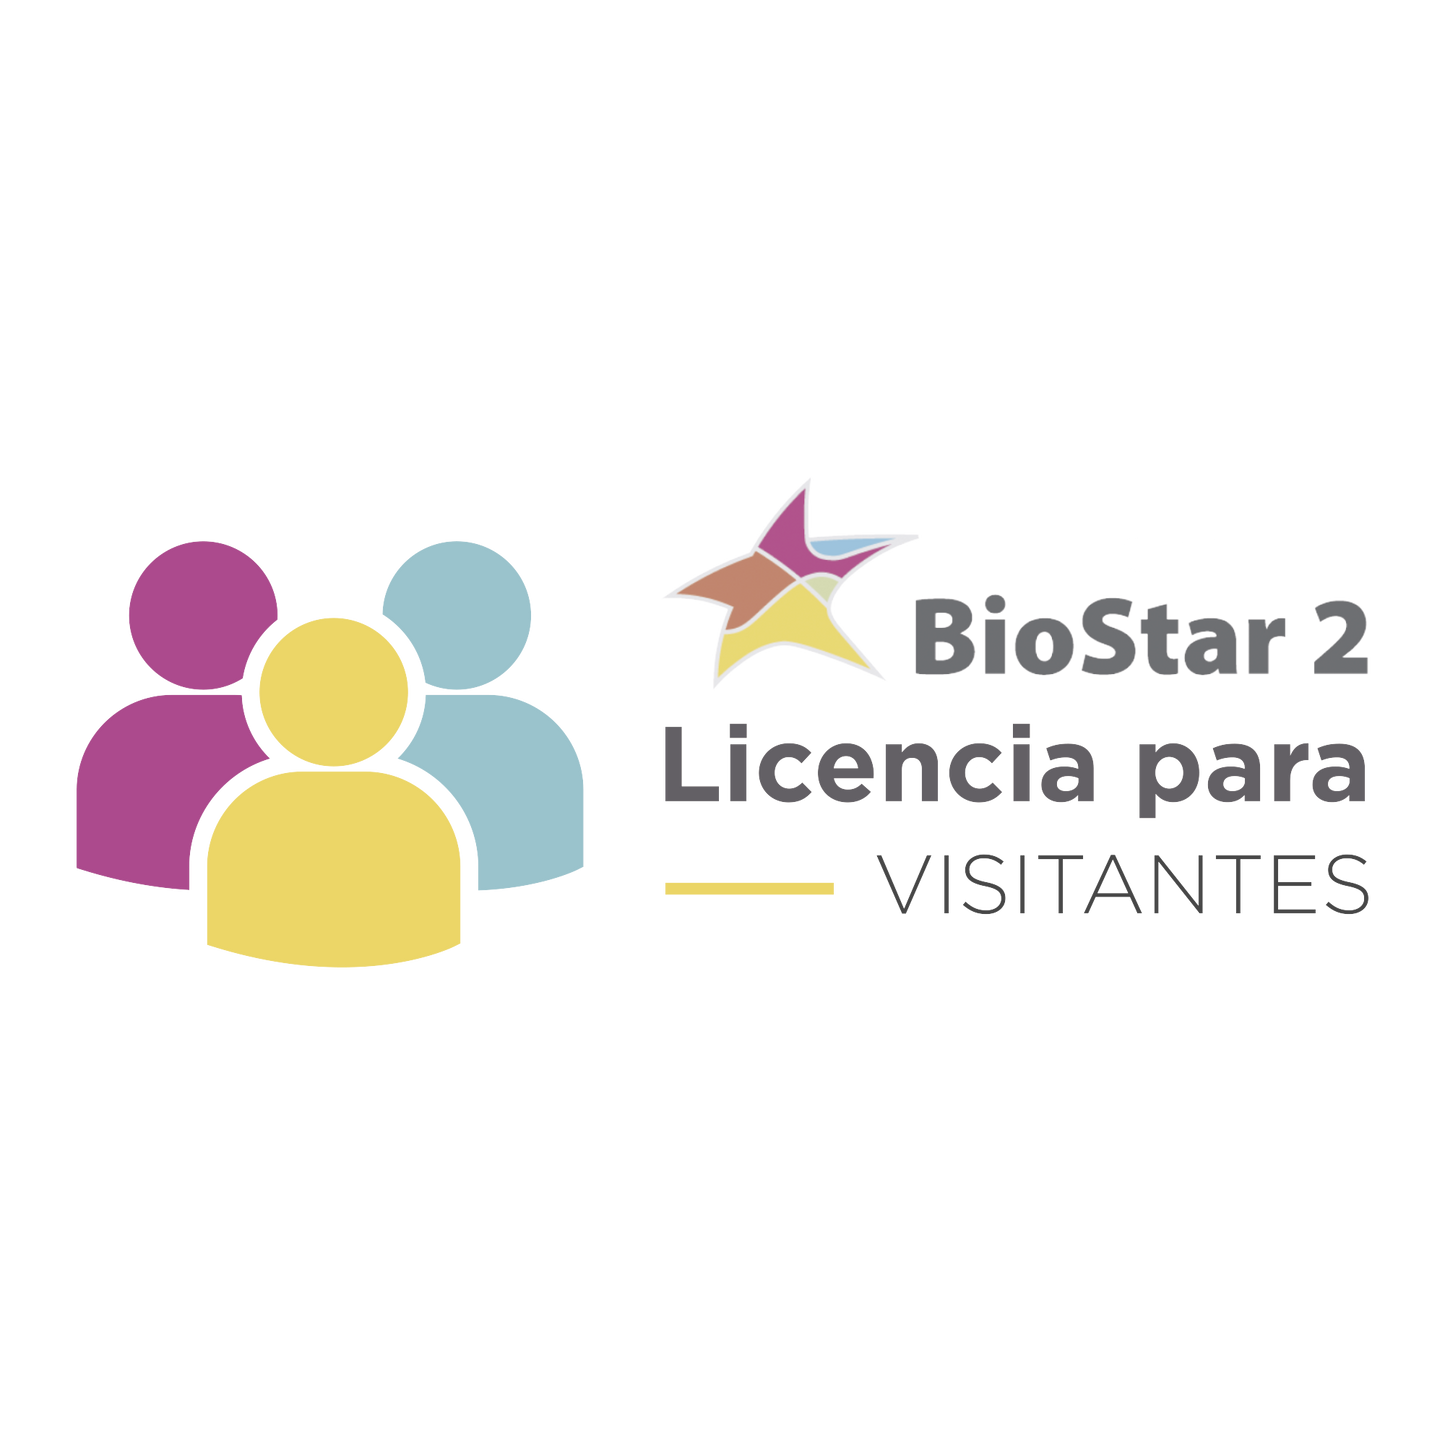 Licencia de Visitantes para uso con software BIOSTAR2